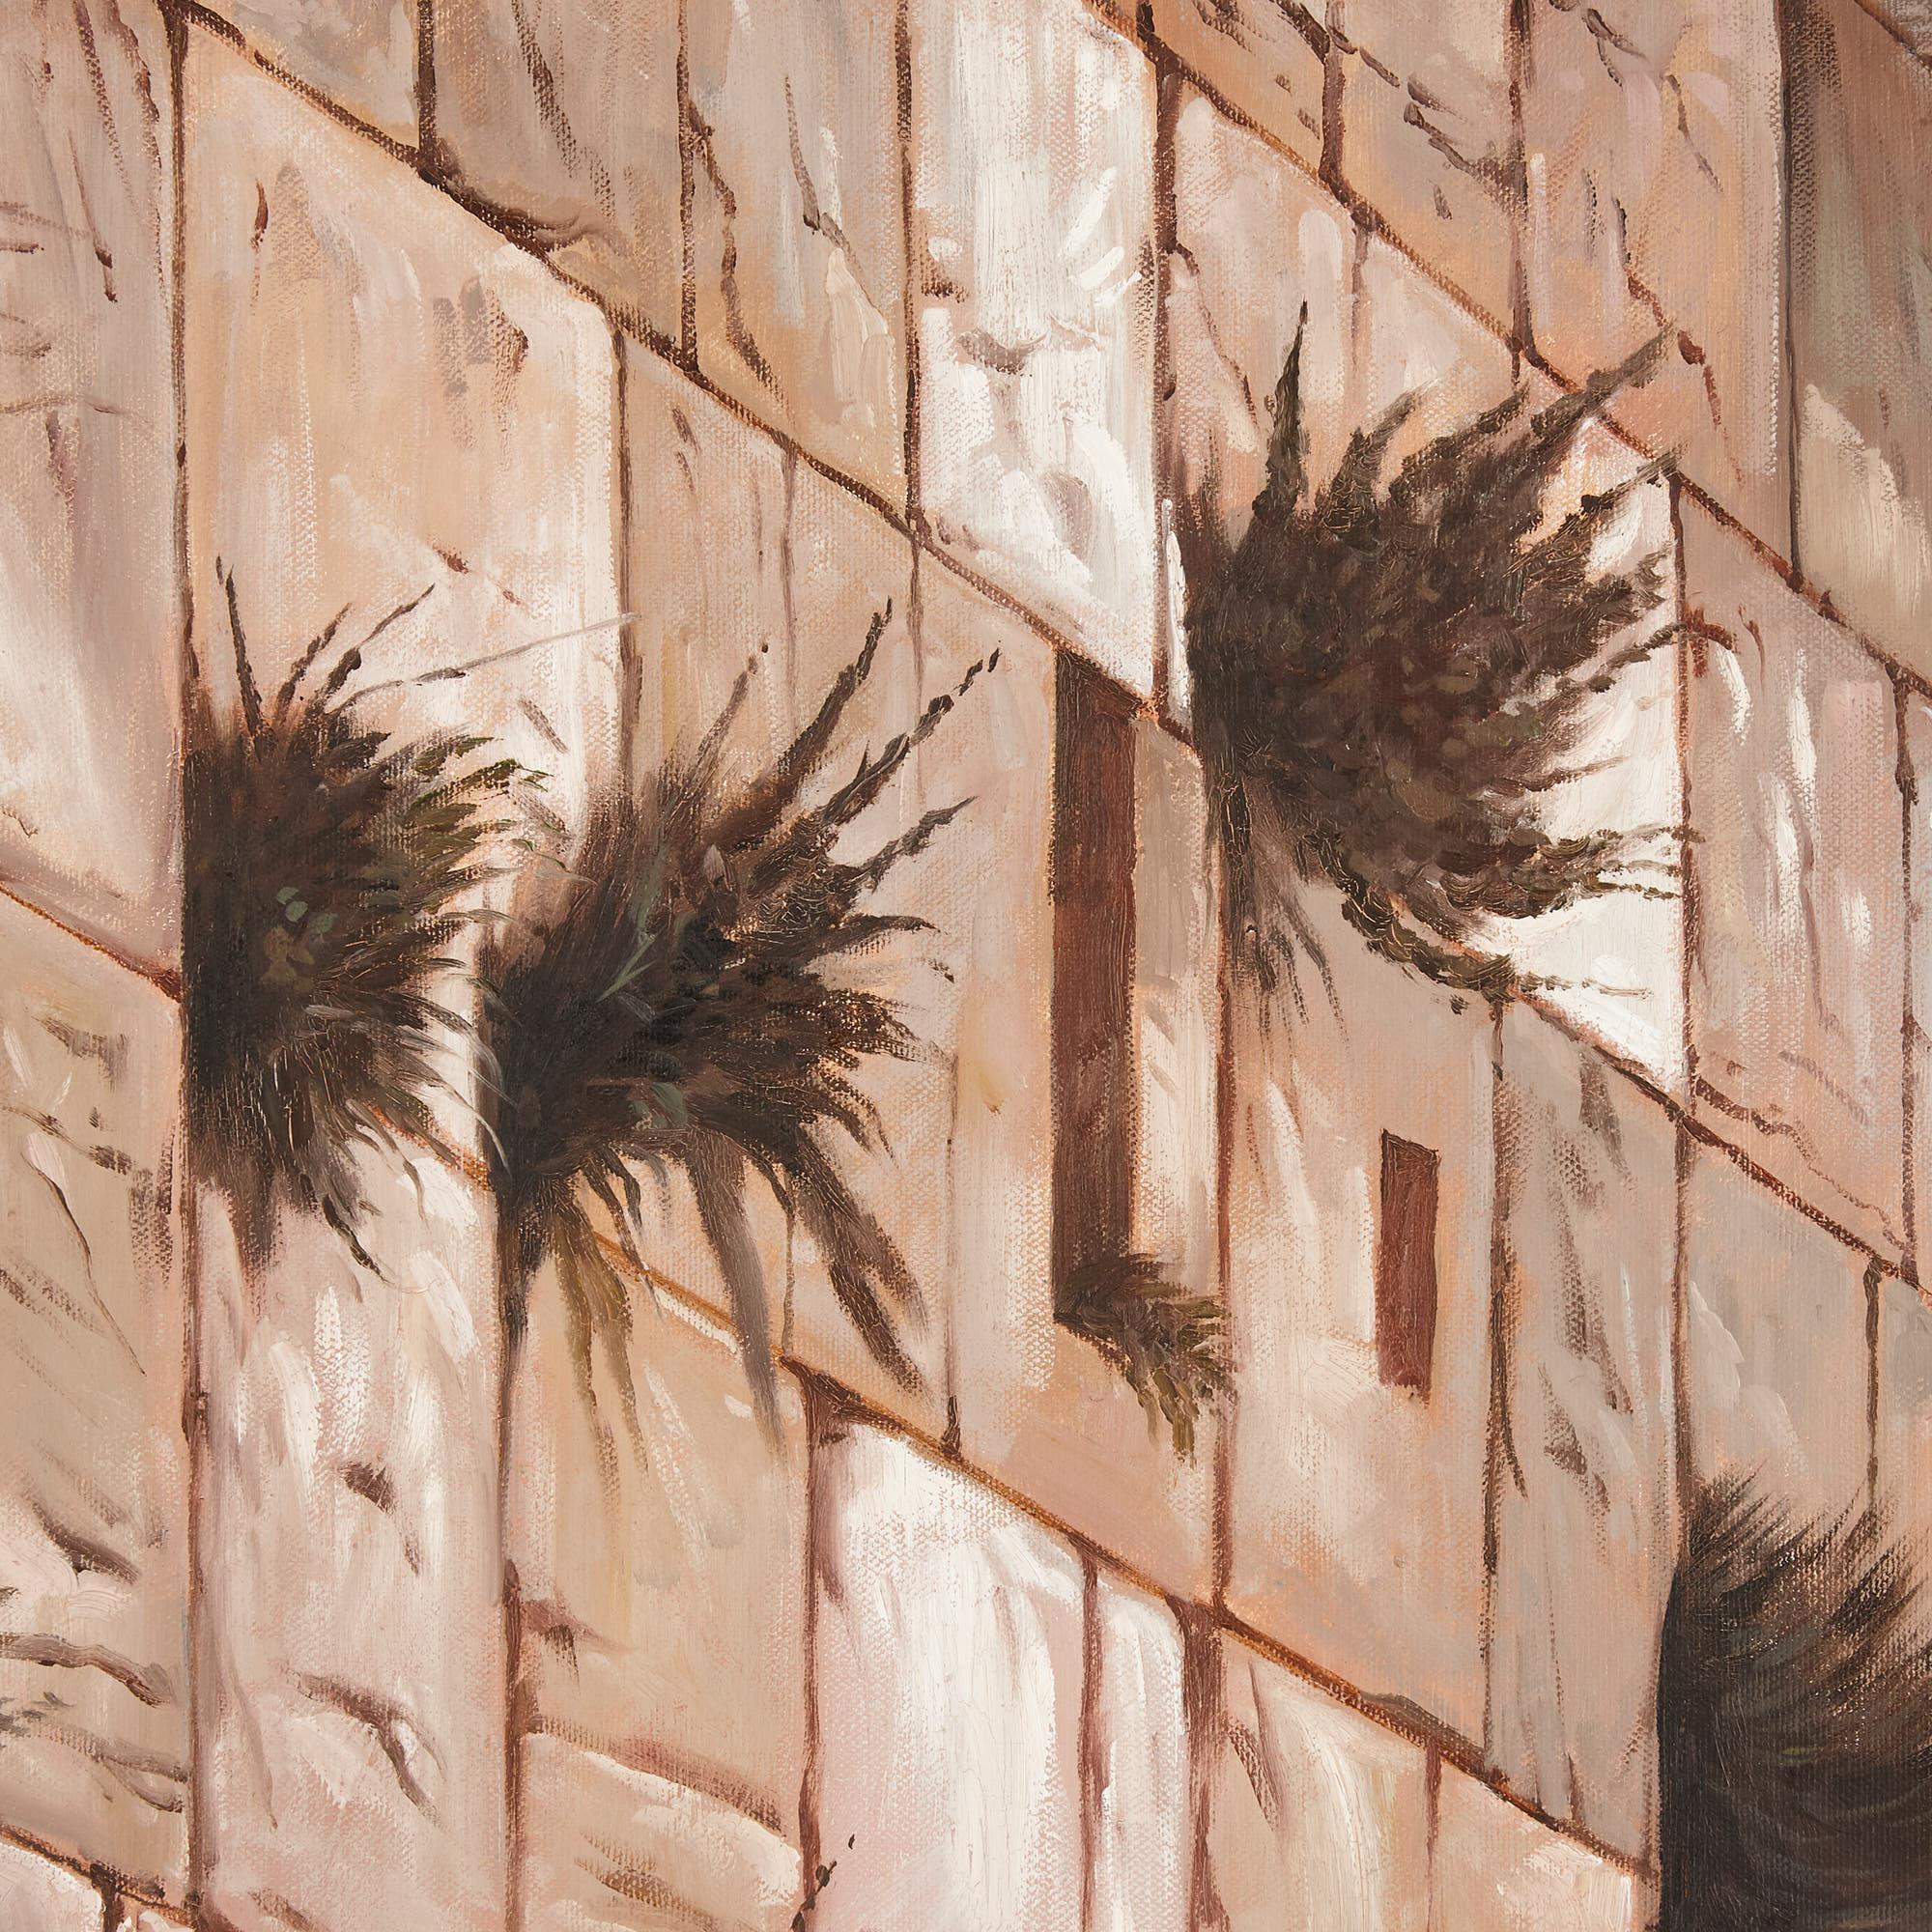 Orientalist painting of Solomon's Wall after J.-L. Gérôme 1